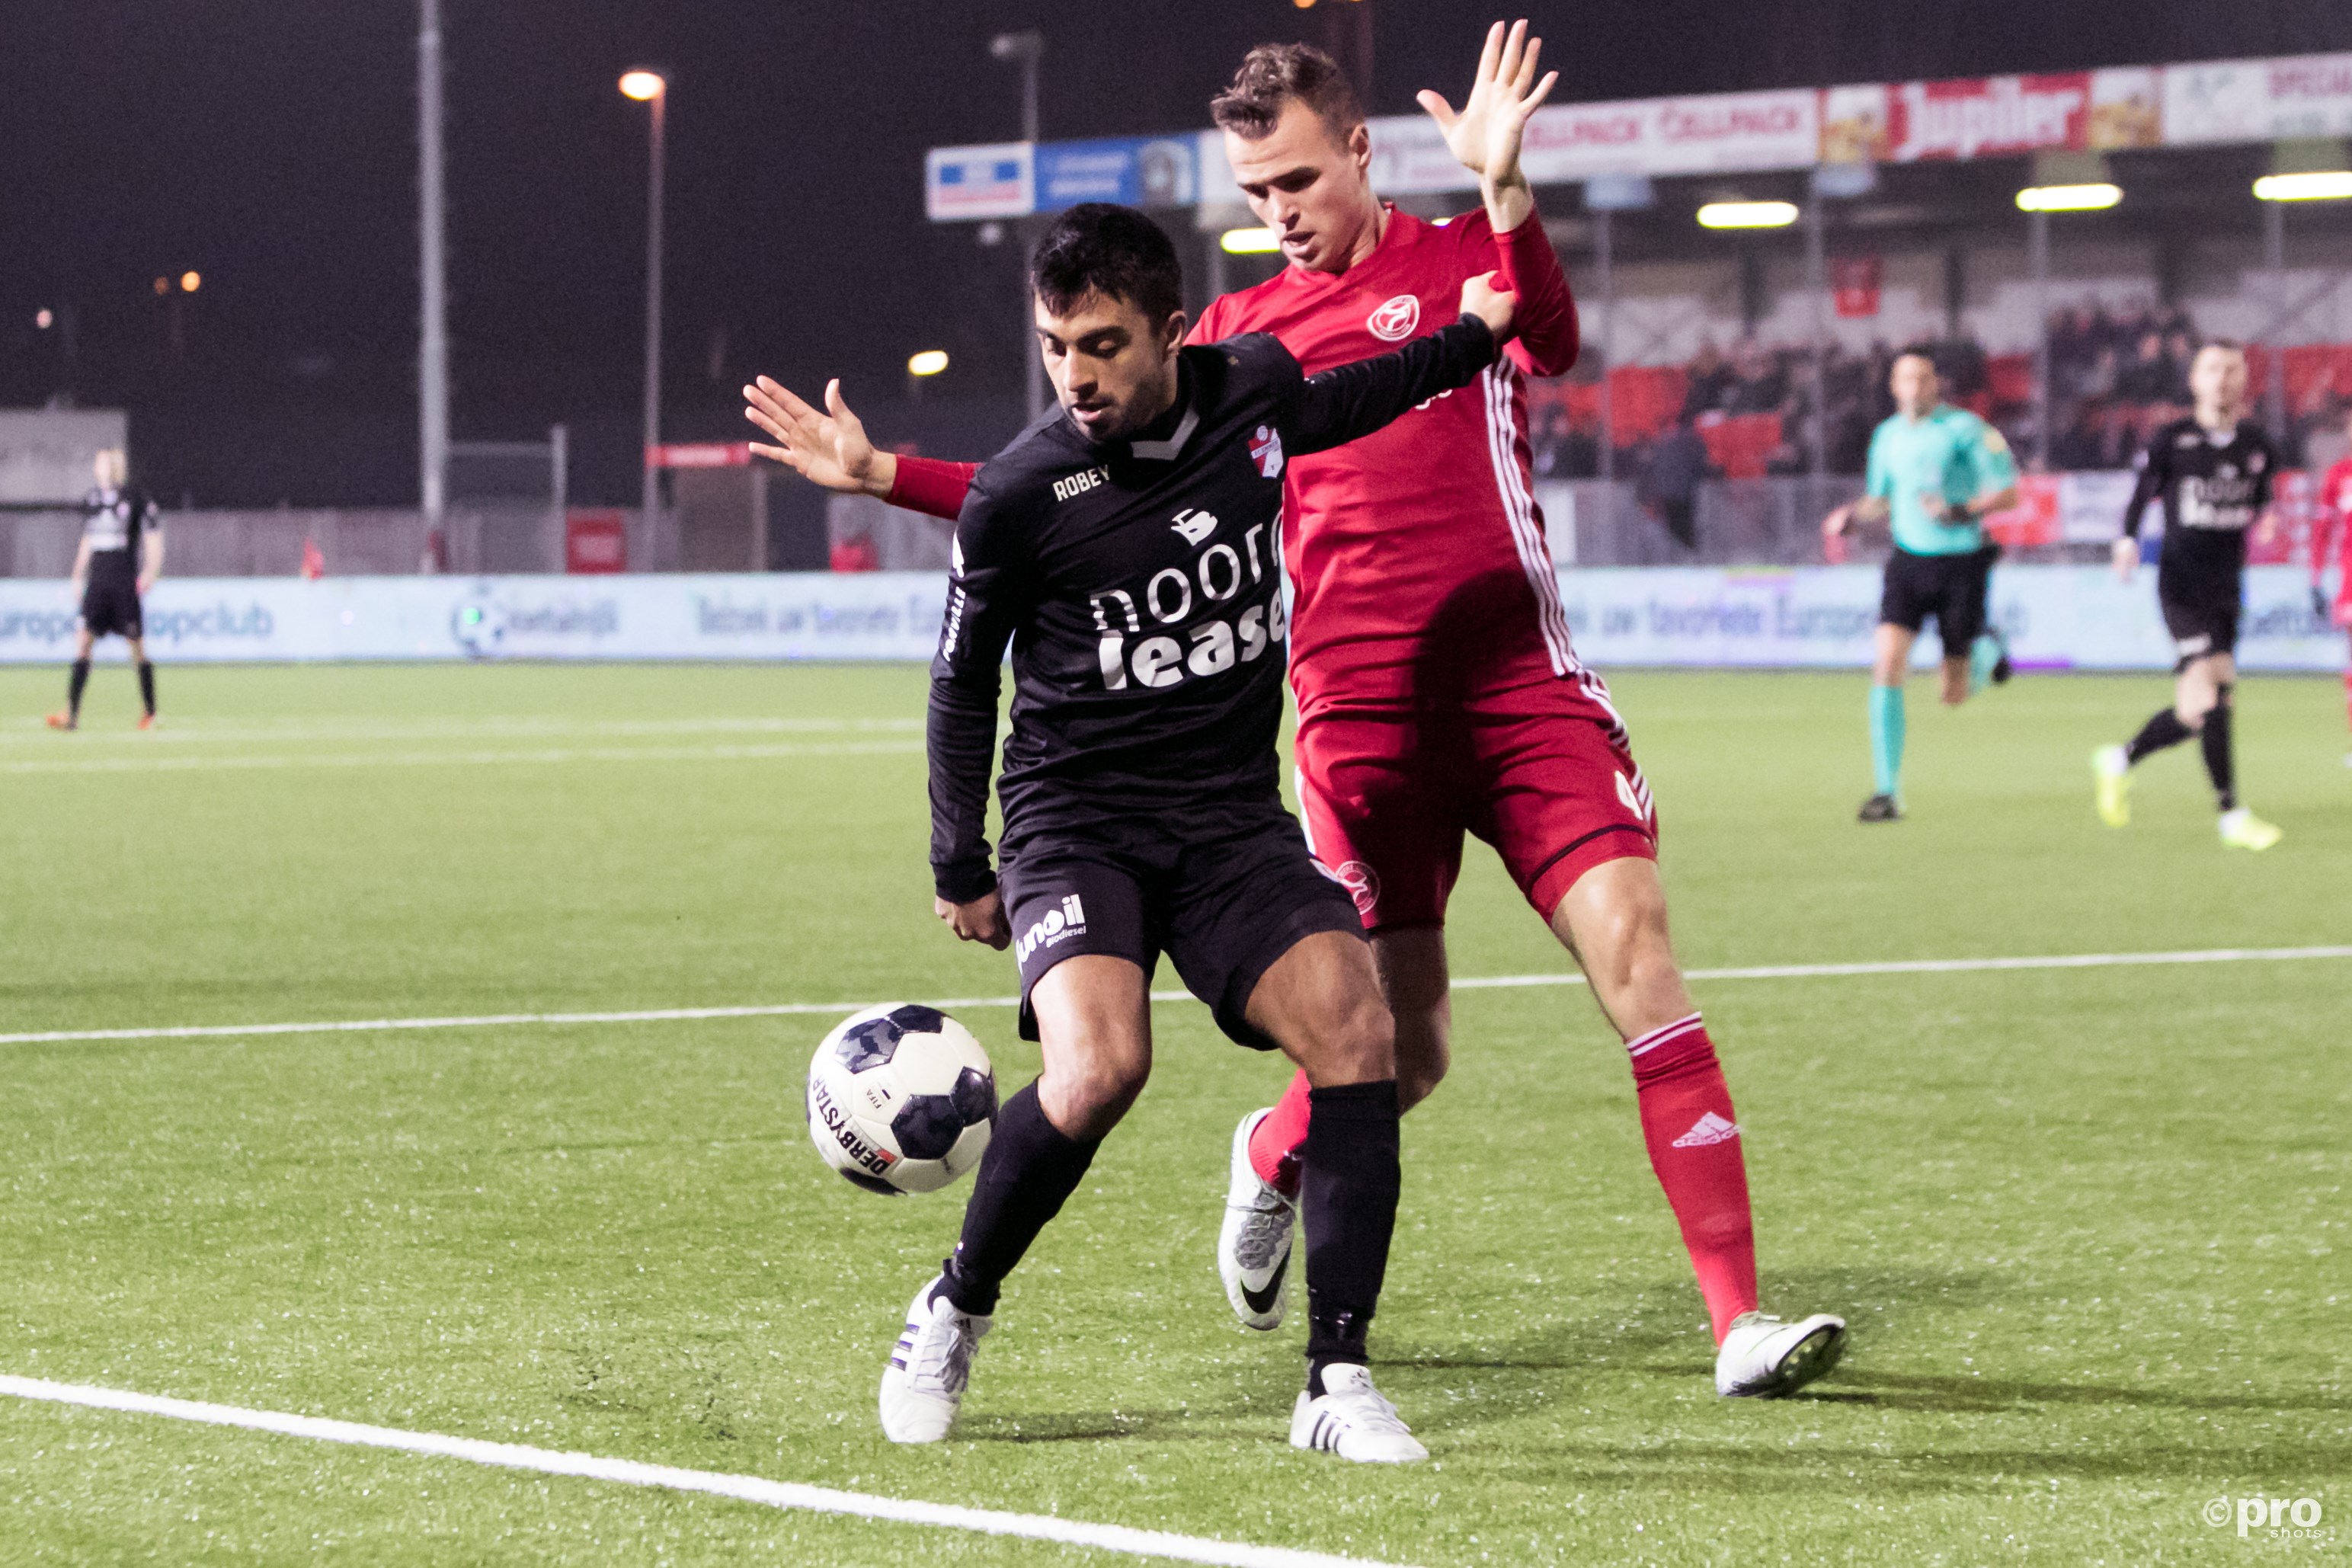 Emmen-speler Aslan in duel met Almere verdediger Nieuwpoort (Pro Shots/Remko Kool)